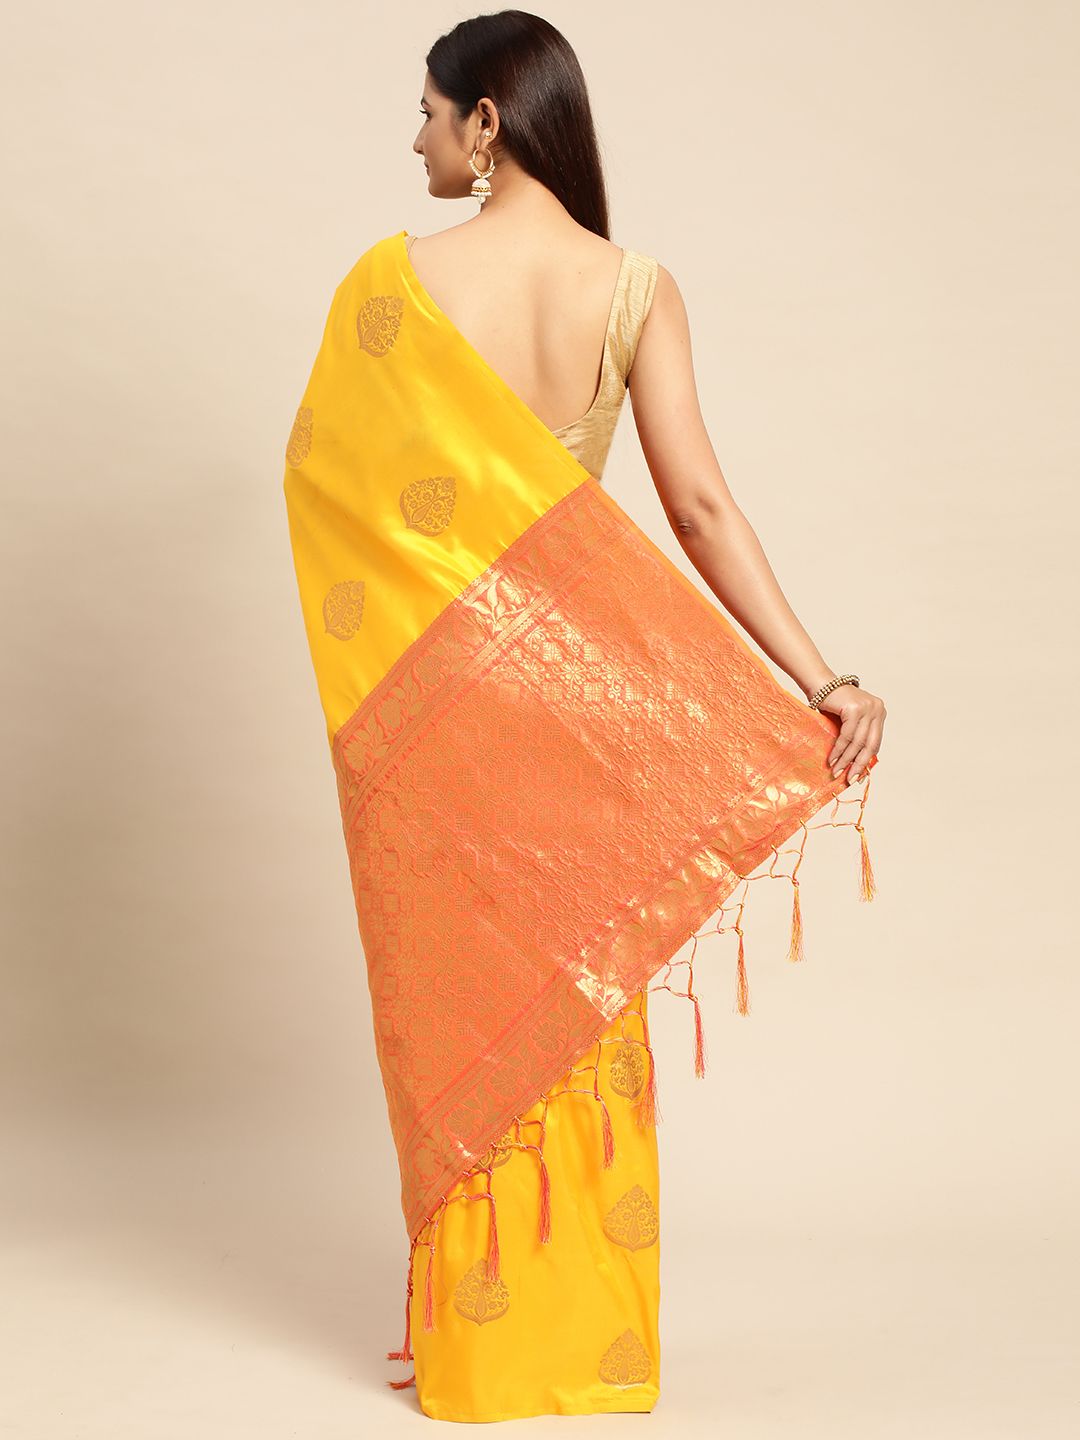 Yellow Traditional banarasi saree looking good